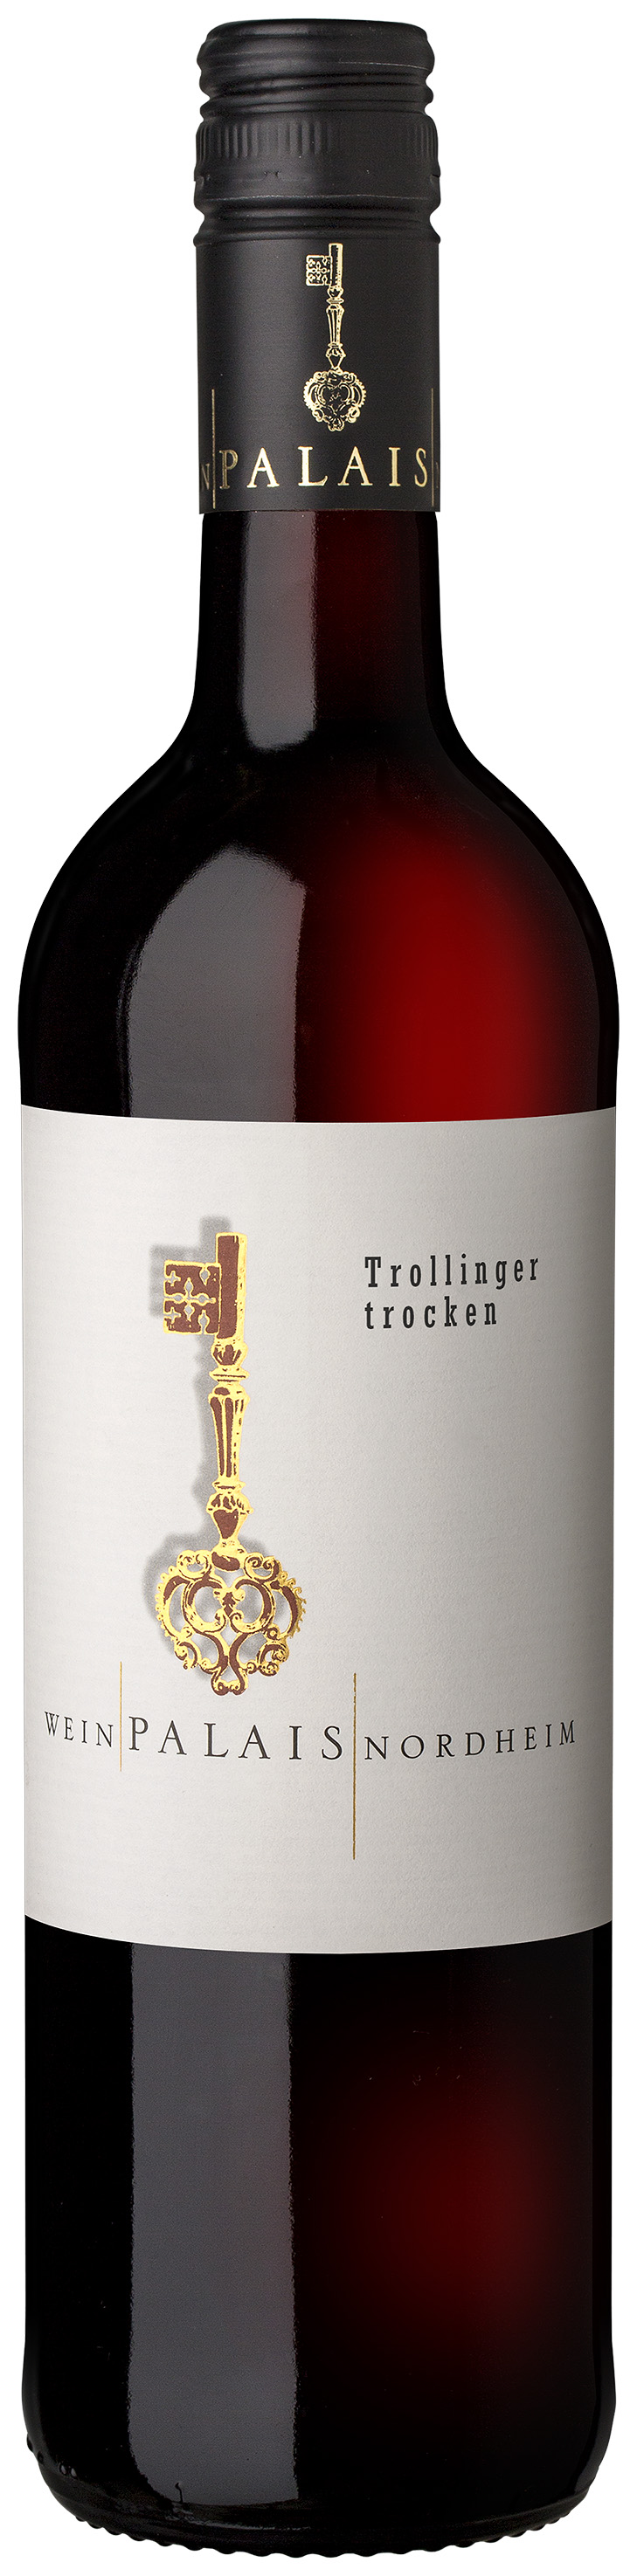 WeinPalais Nordheim 2020 Trollinger trocken